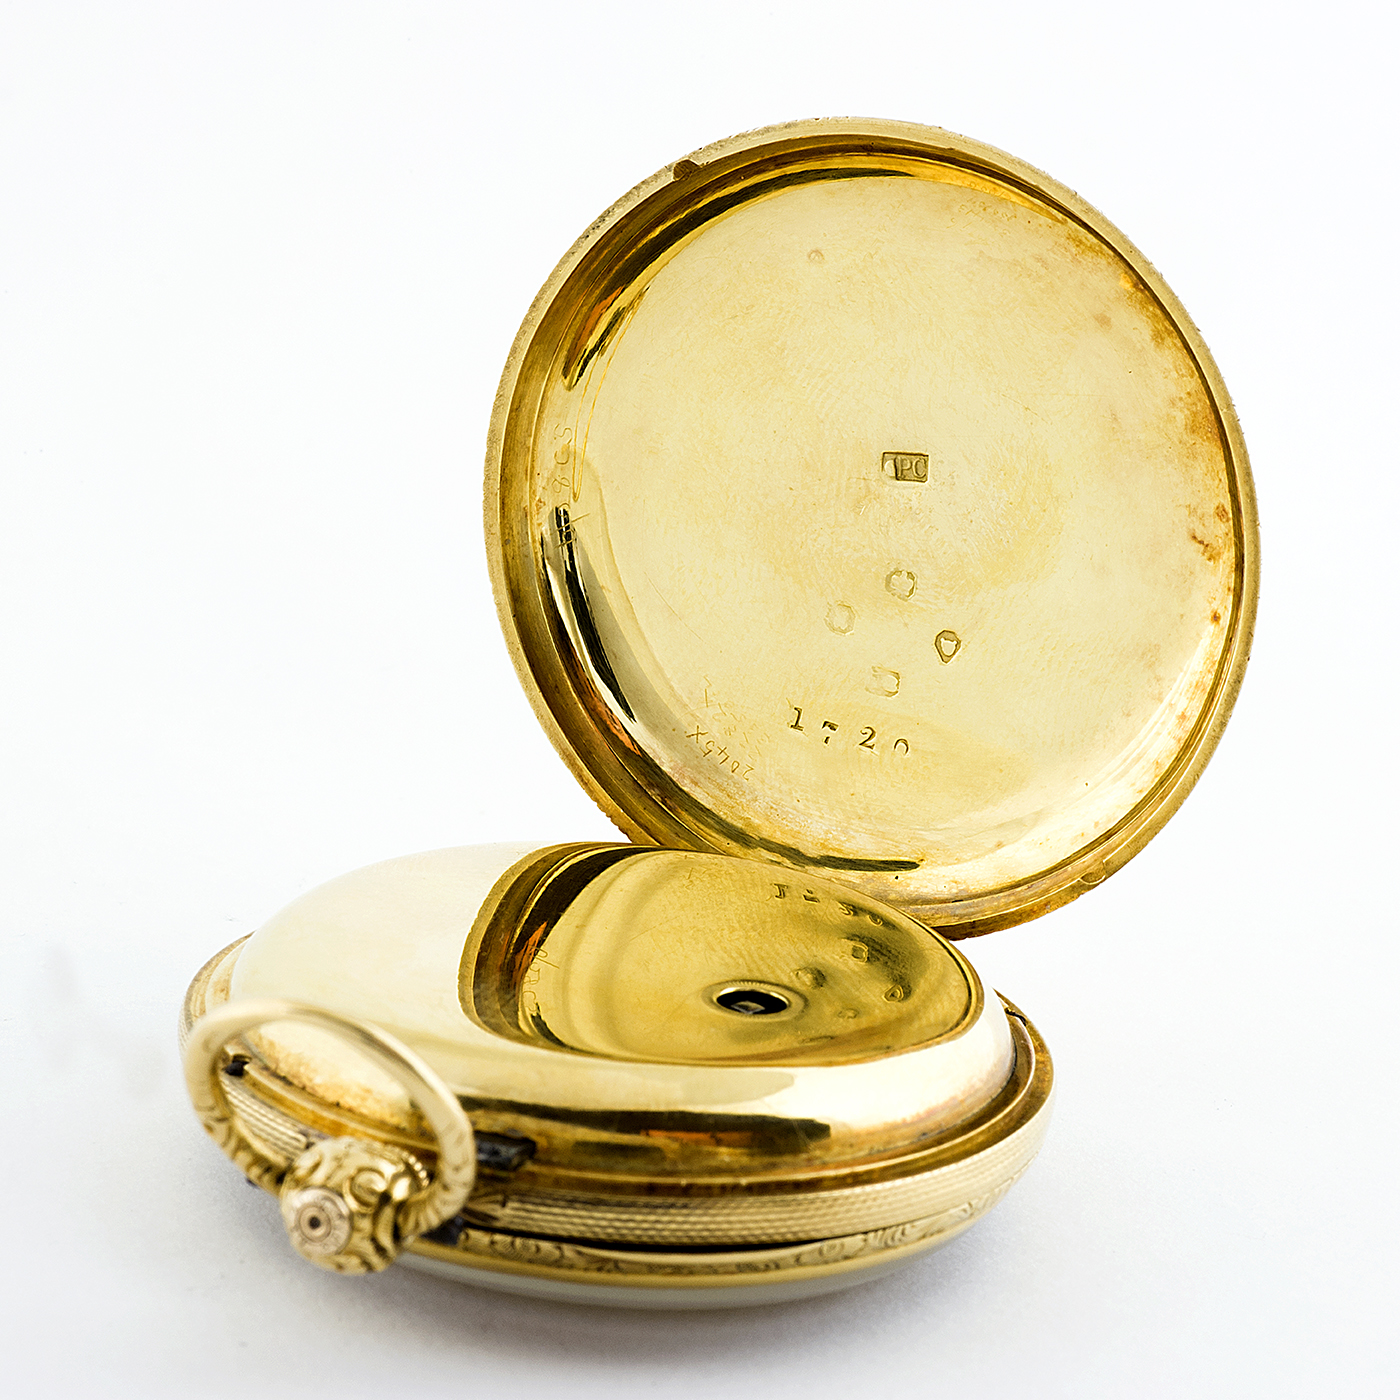 Owen & Owens. Liverpool. Reloj de Bolsillo para caballero, Lepine, Half Fusee (Semicatalino). Año 1856.